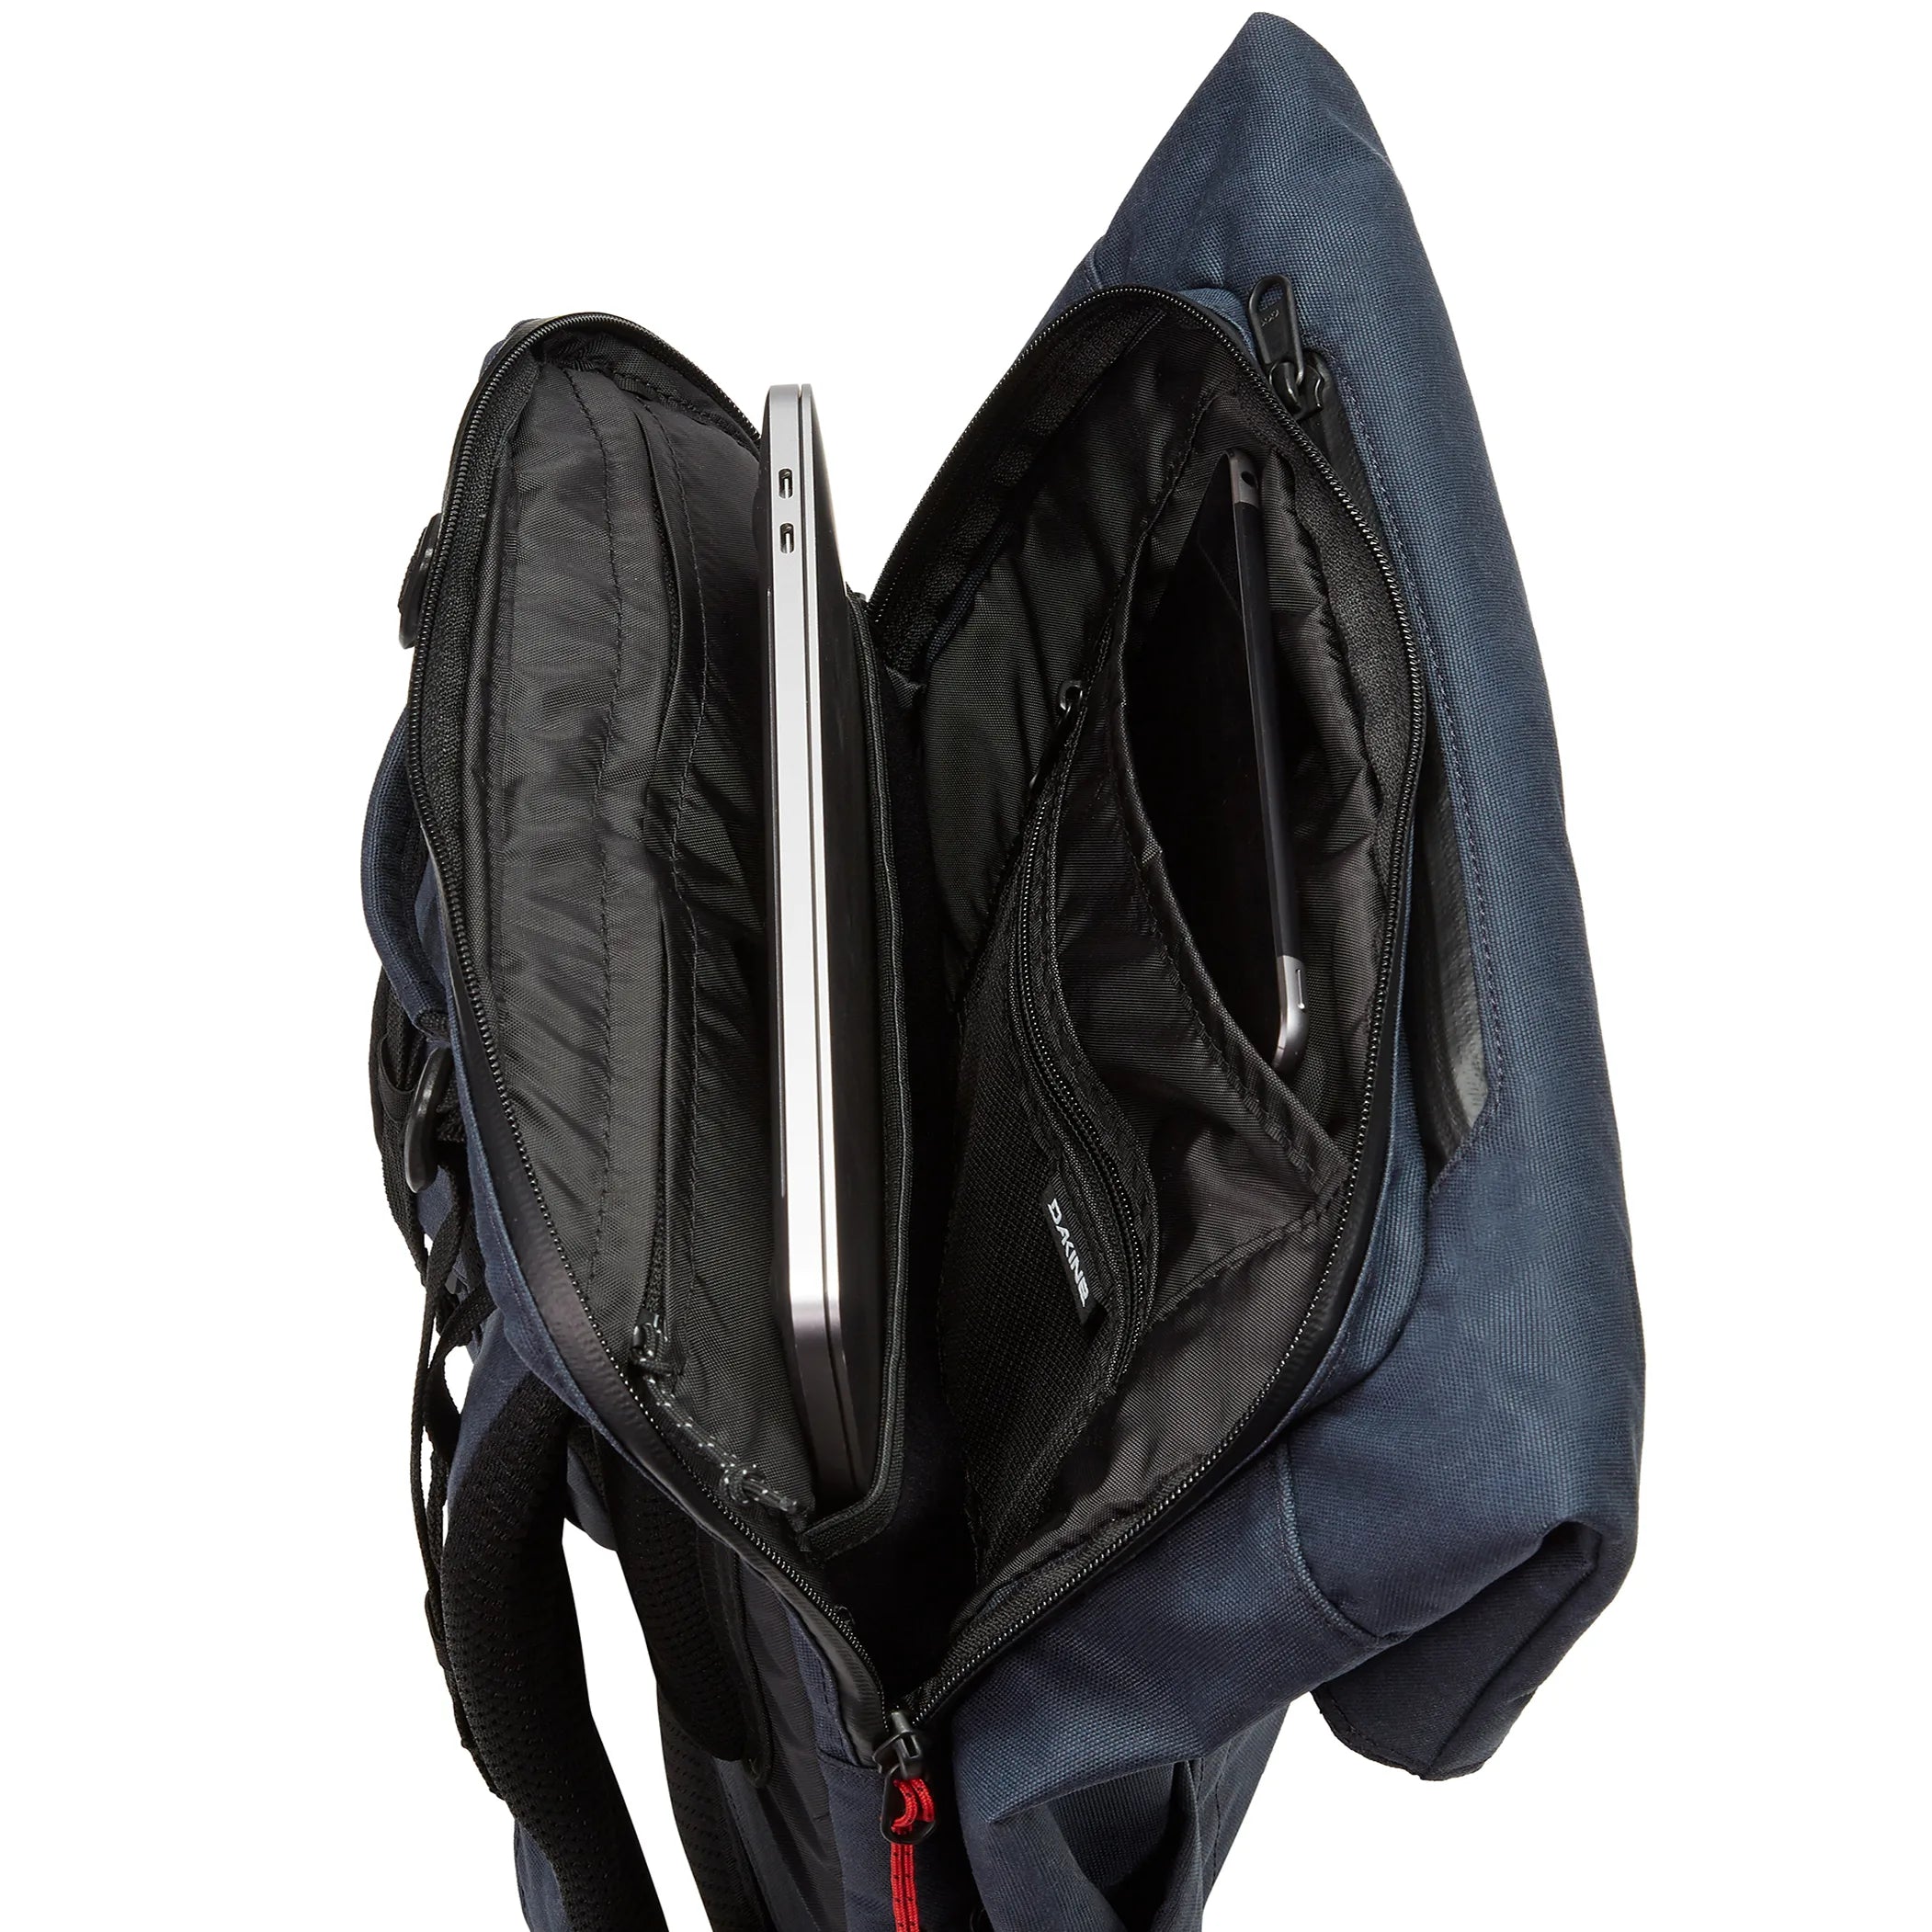 Dakine Packs & Bags Infinity Pack 21L Backpack 46 cm - sparrow